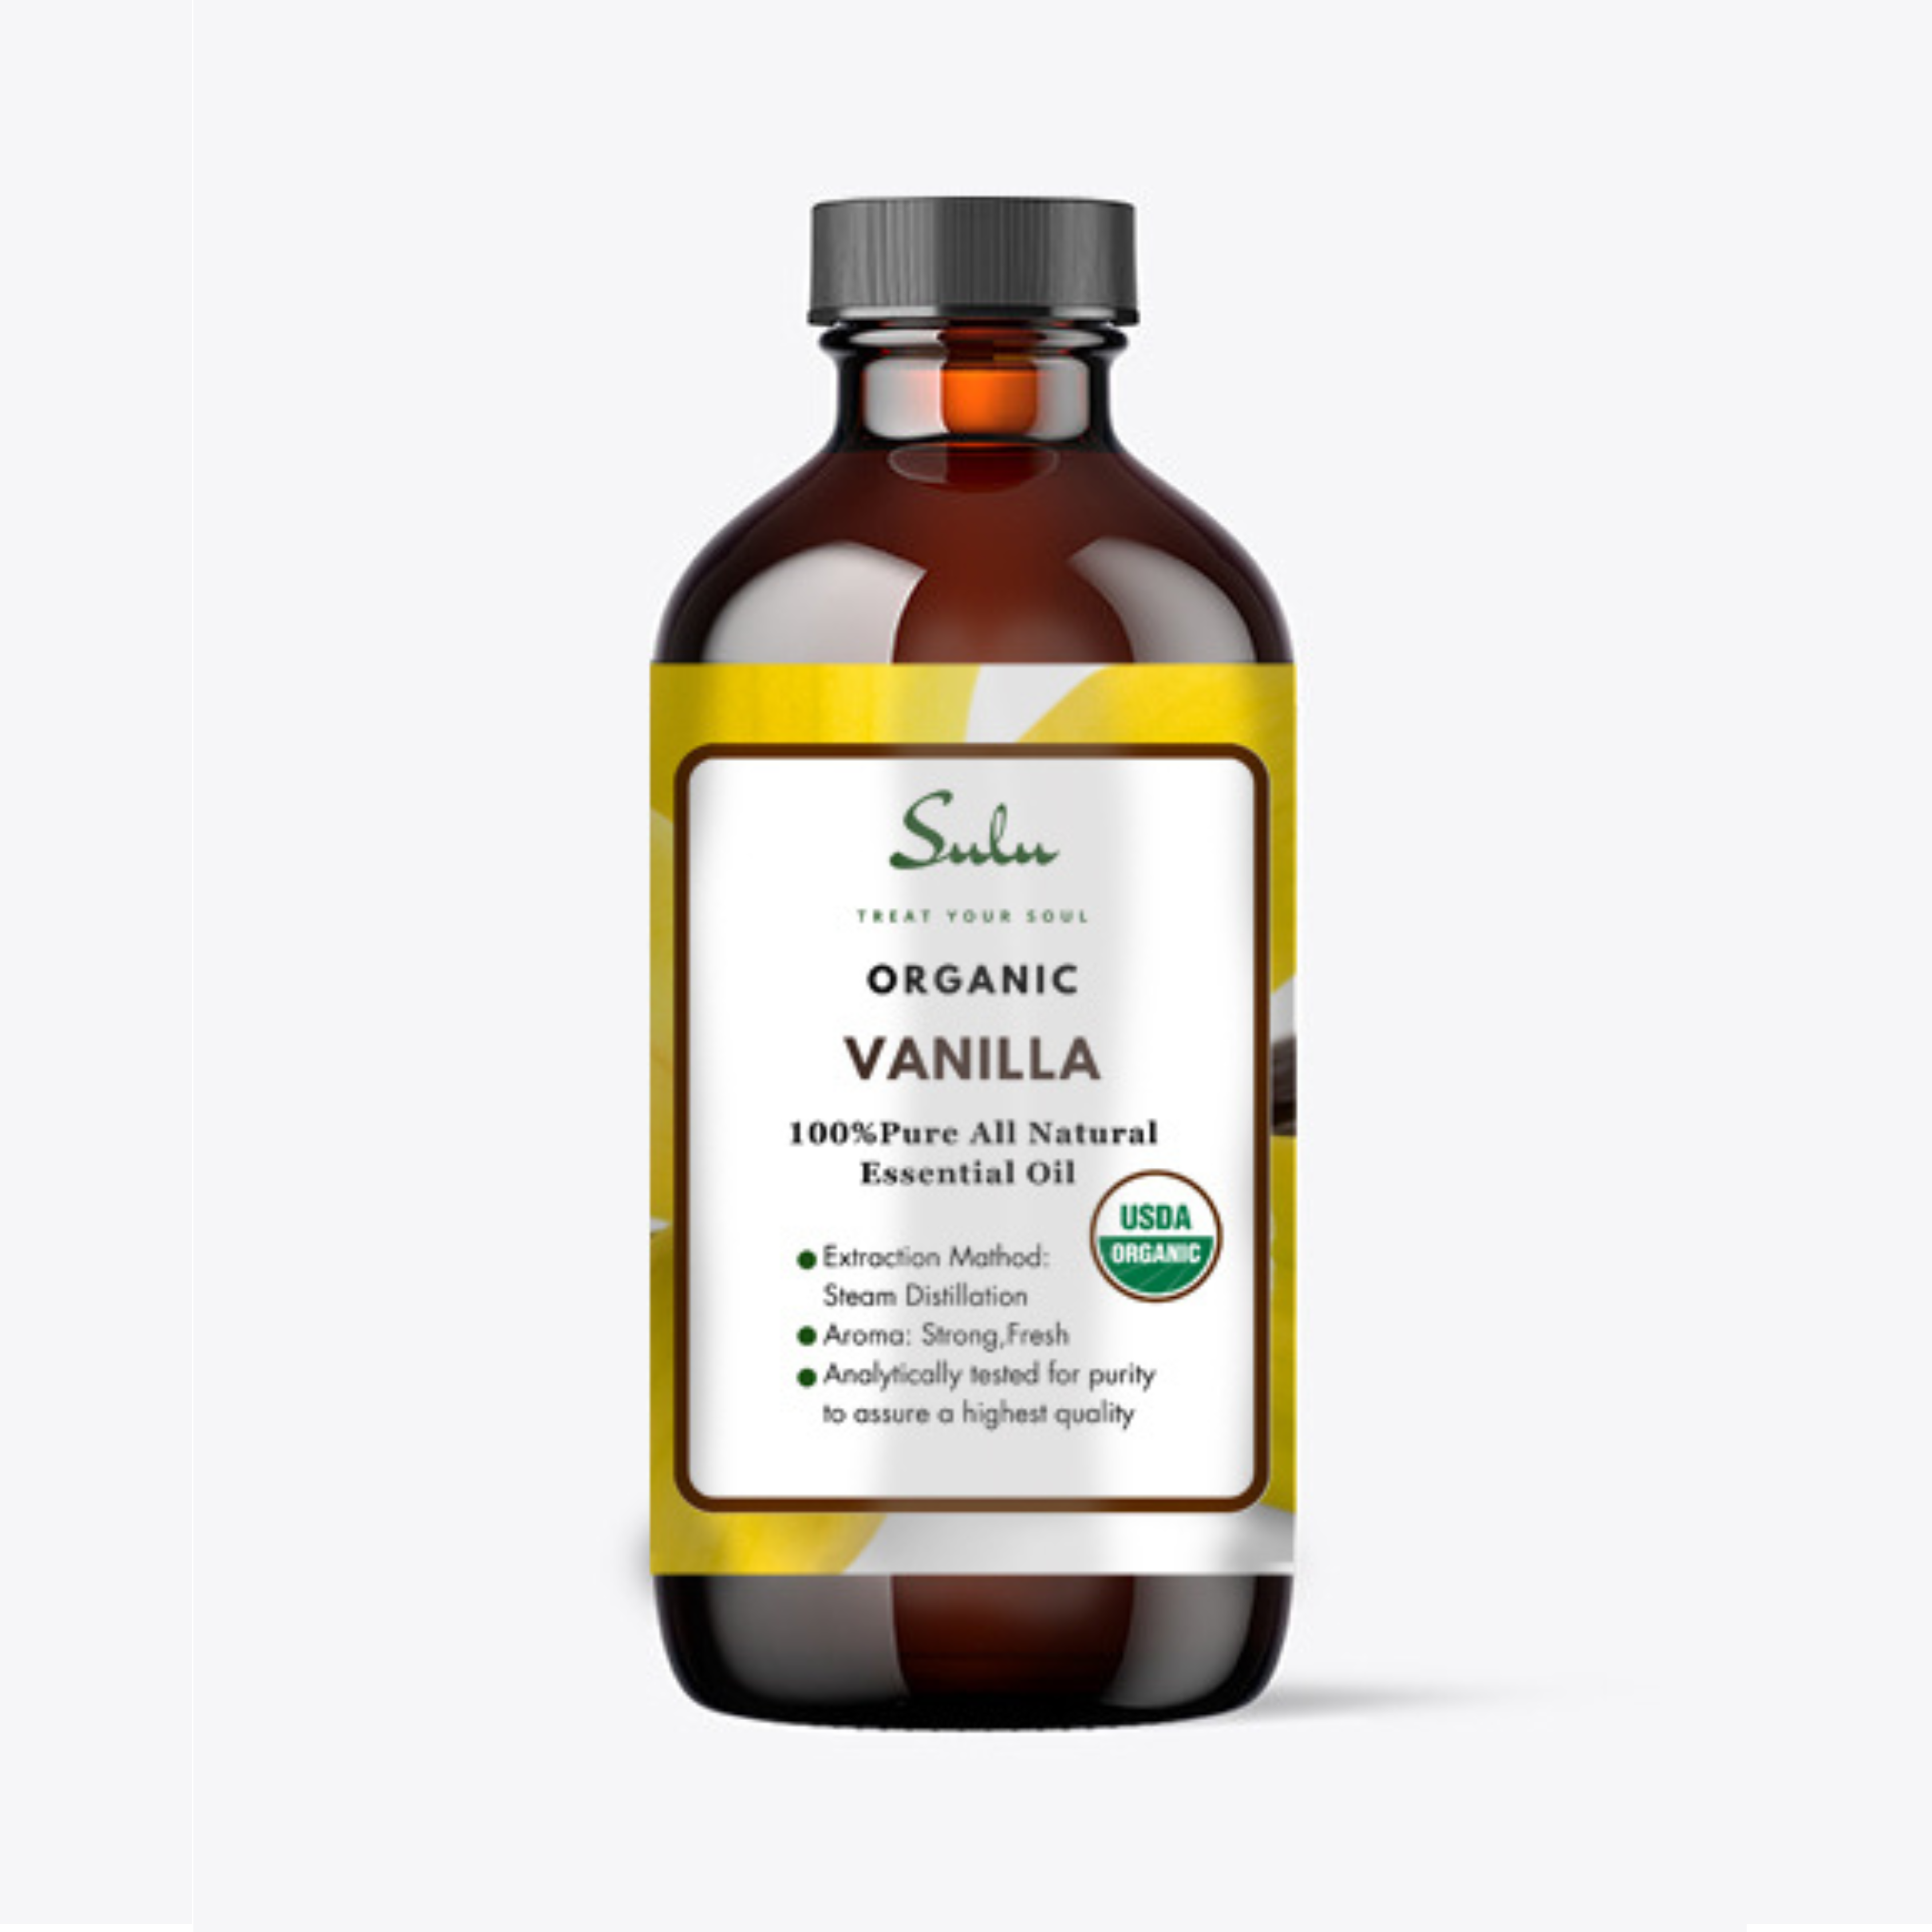 Hâ€™ana Pure Vanilla Essential Oil for Diffuser & Skin (1 fl oz) - 100%  Undiluted Therapeutic Grade Vanilla Oleoresin Essential Oil - Fragrant and